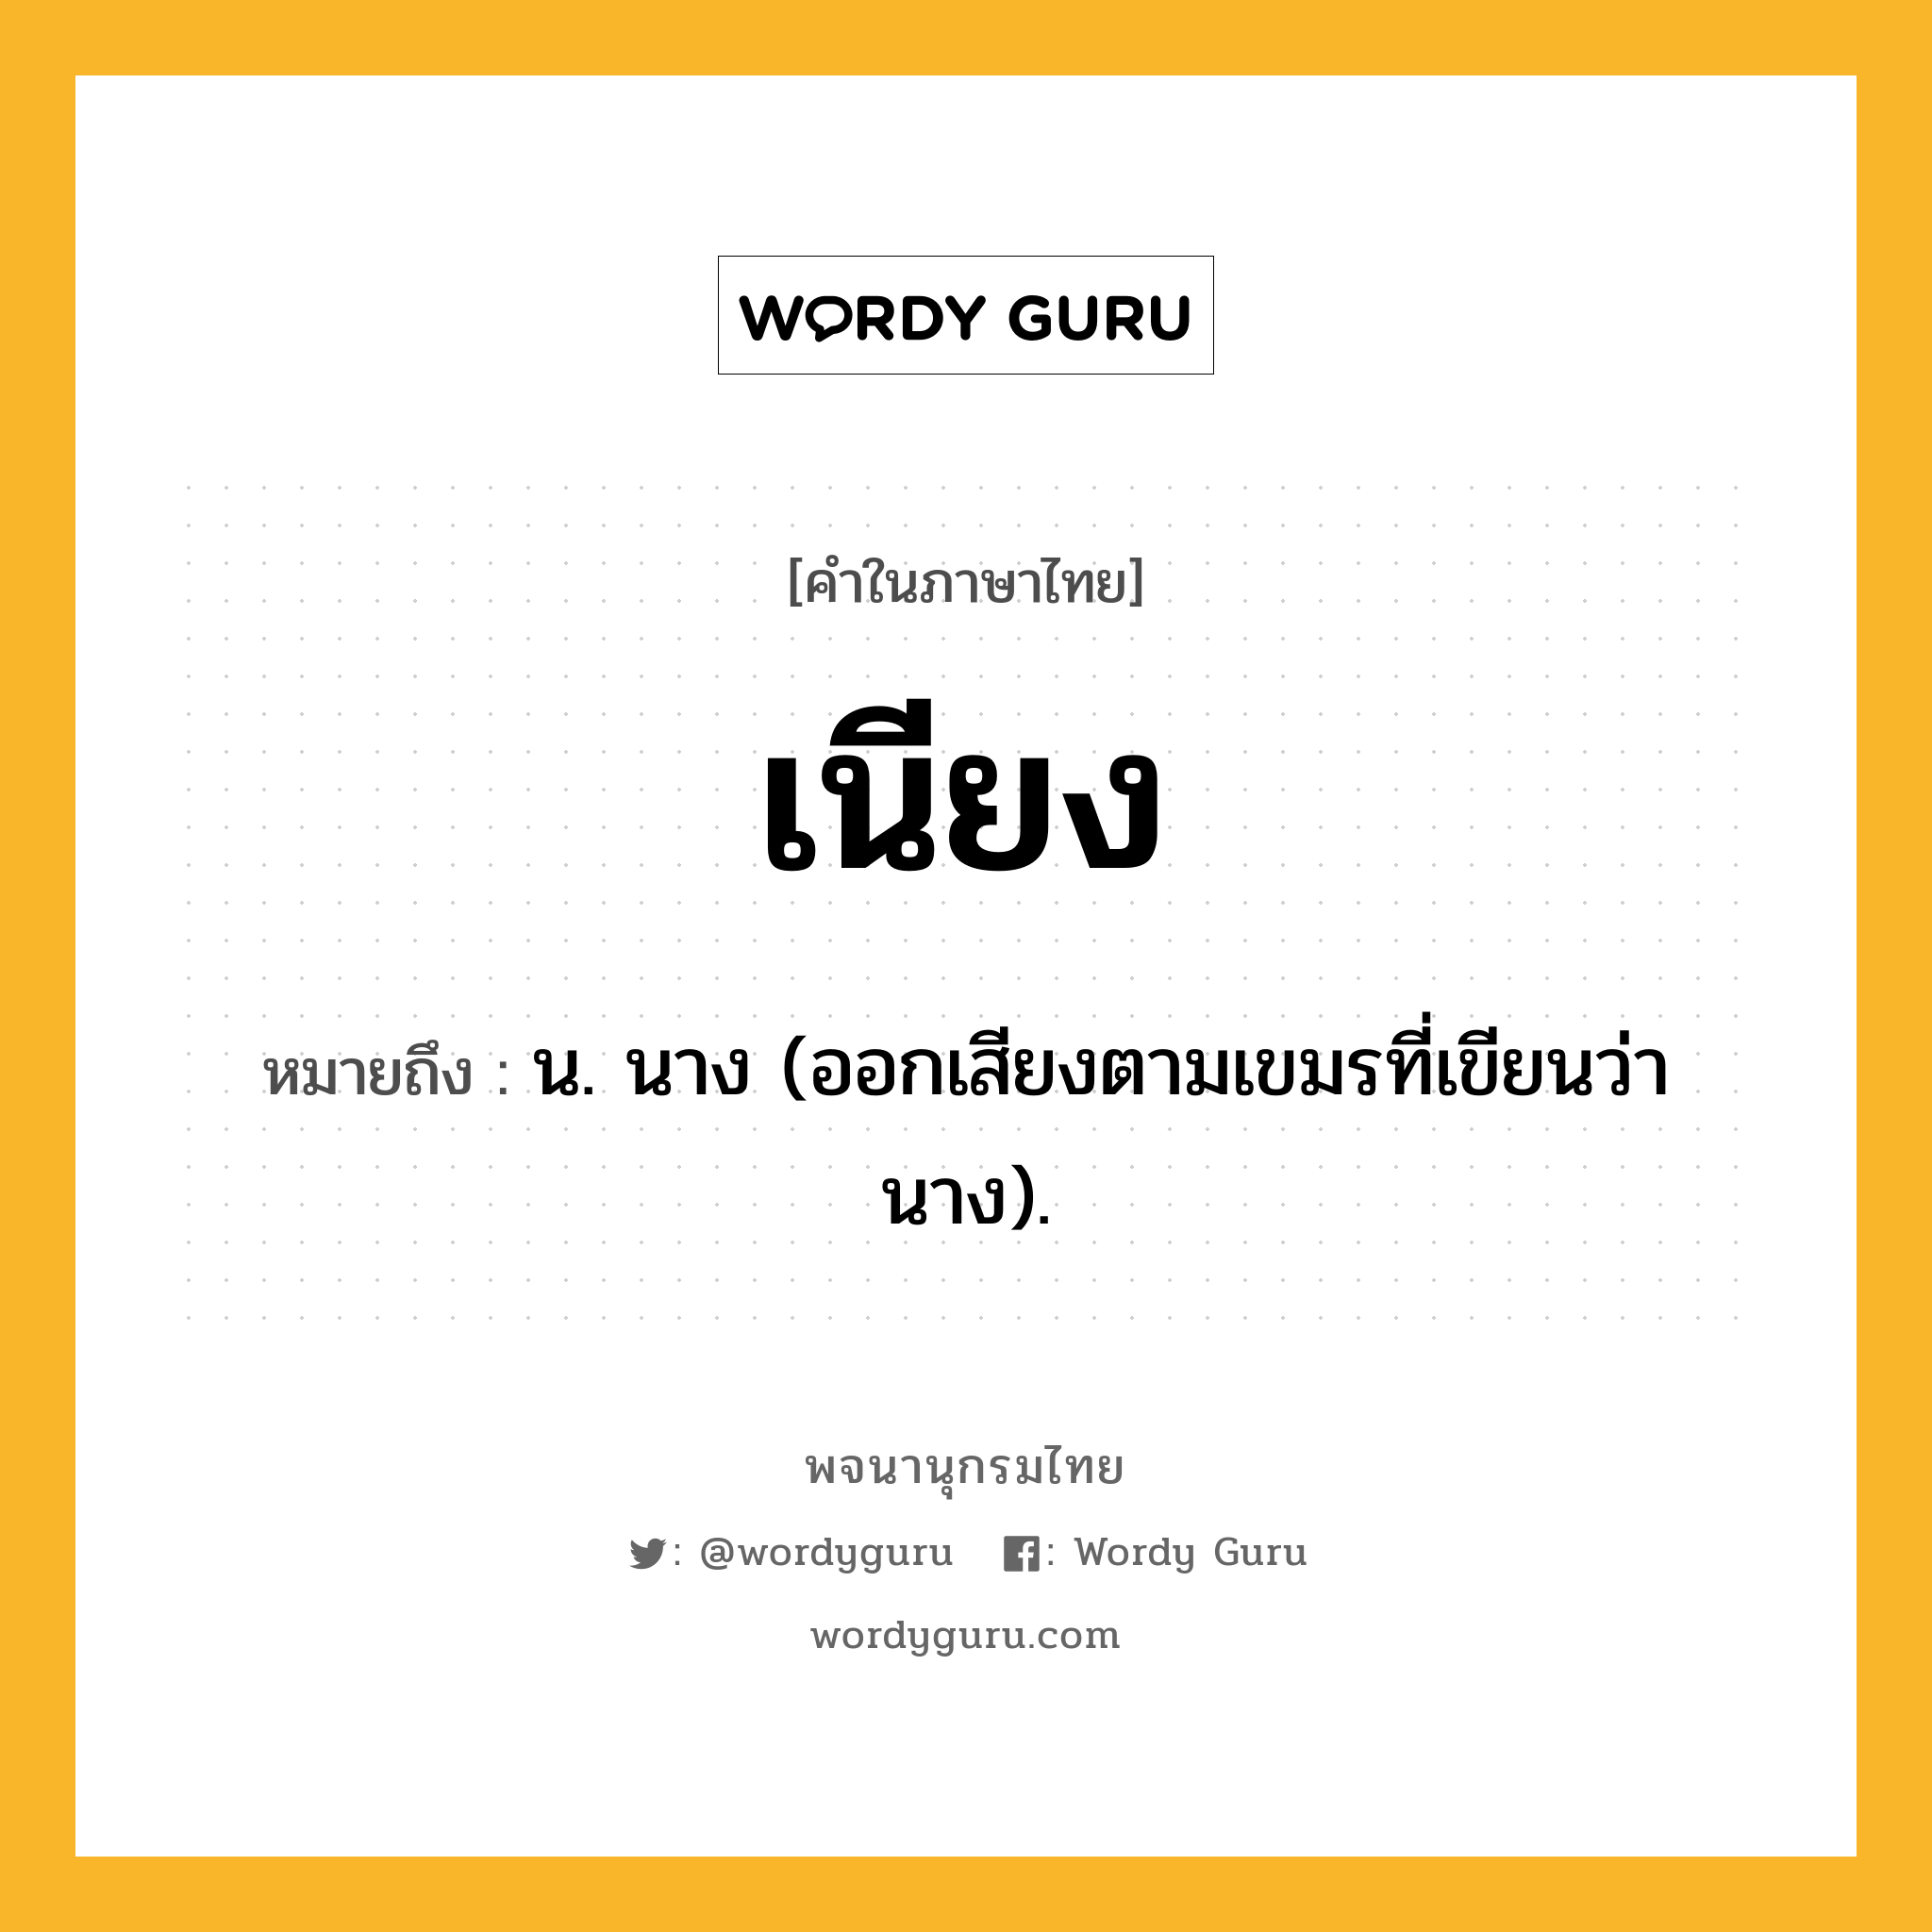 เนียง ความหมาย หมายถึงอะไร?, คำในภาษาไทย เนียง หมายถึง น. นาง (ออกเสียงตามเขมรที่เขียนว่า นาง).